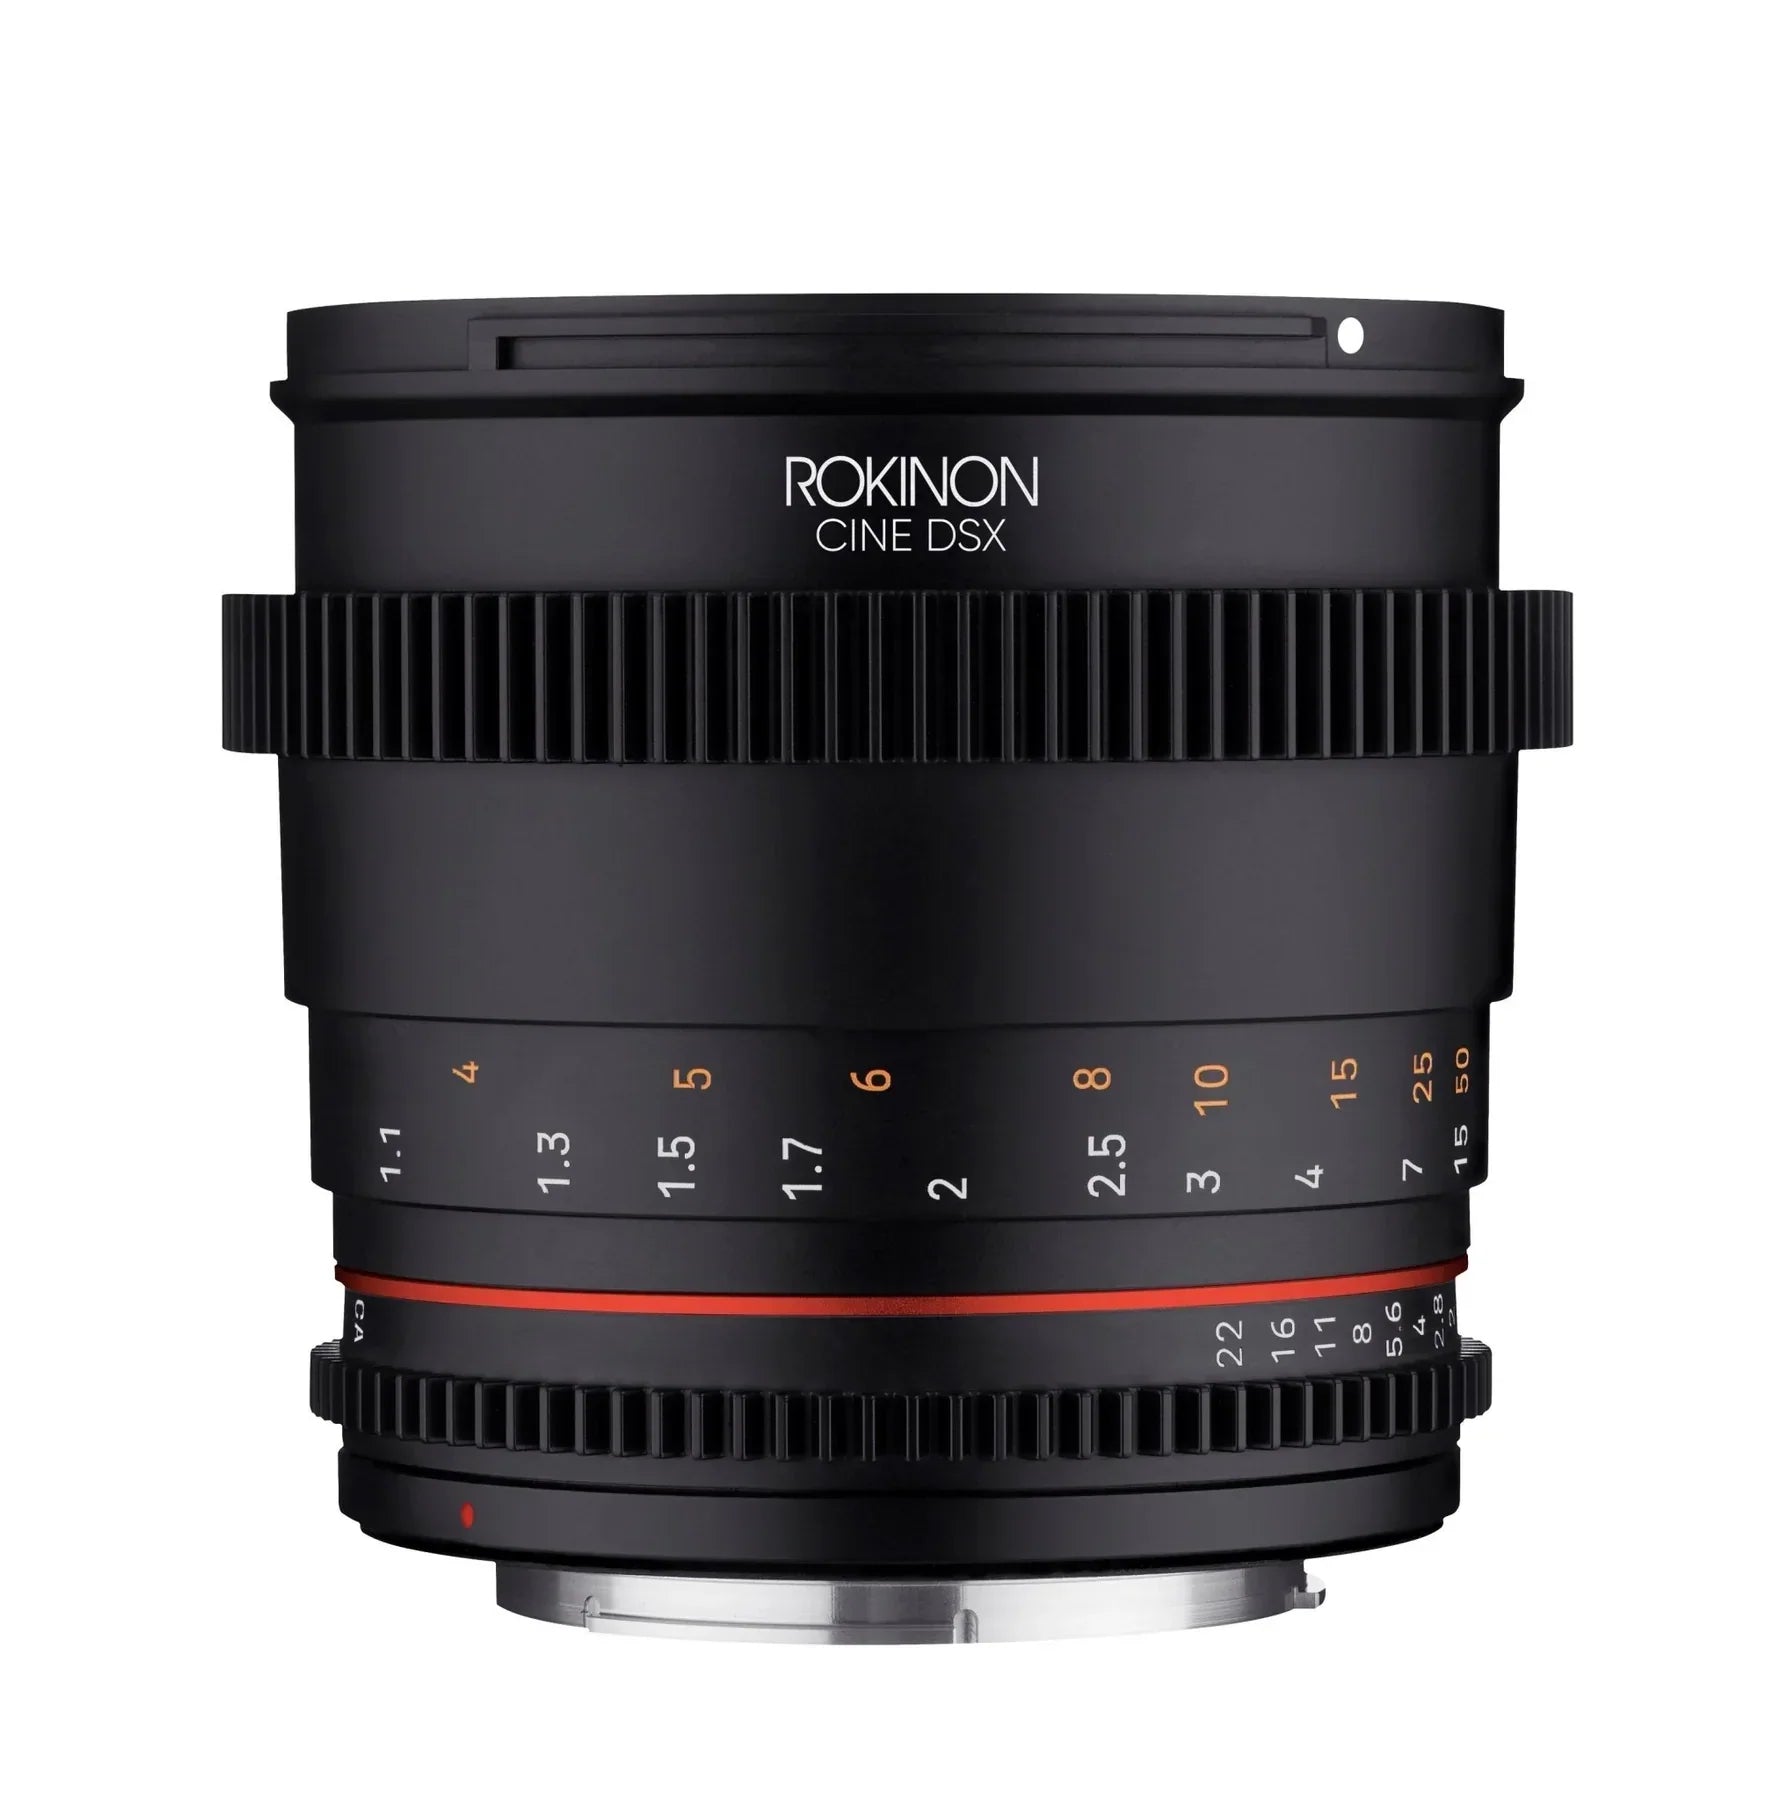 Rokinon 85mm T1.5 Full Frame Telephoto Cine DSX Lens | Filter Size 72mm - Sony E Lens Mount Camera tek